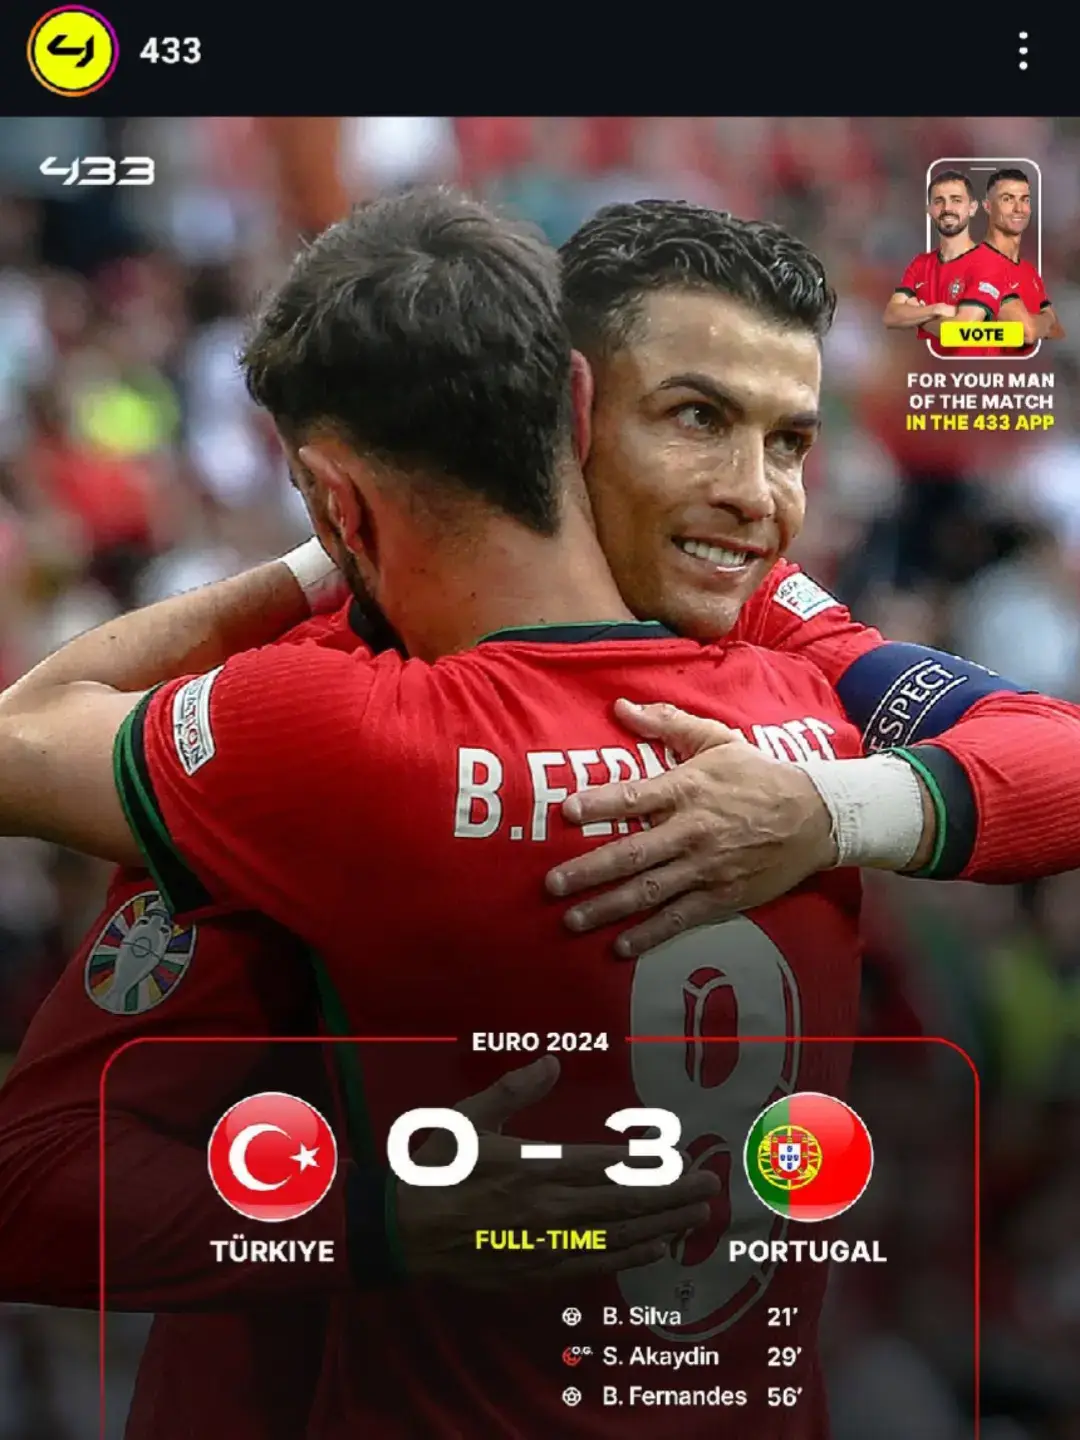 Hasil Pertandingan Portugal vs Turki. Portugal menang telak 3-0🔥 #euro  #portugal🇵🇹 #turki #ronaldo #cr7 #fyp 